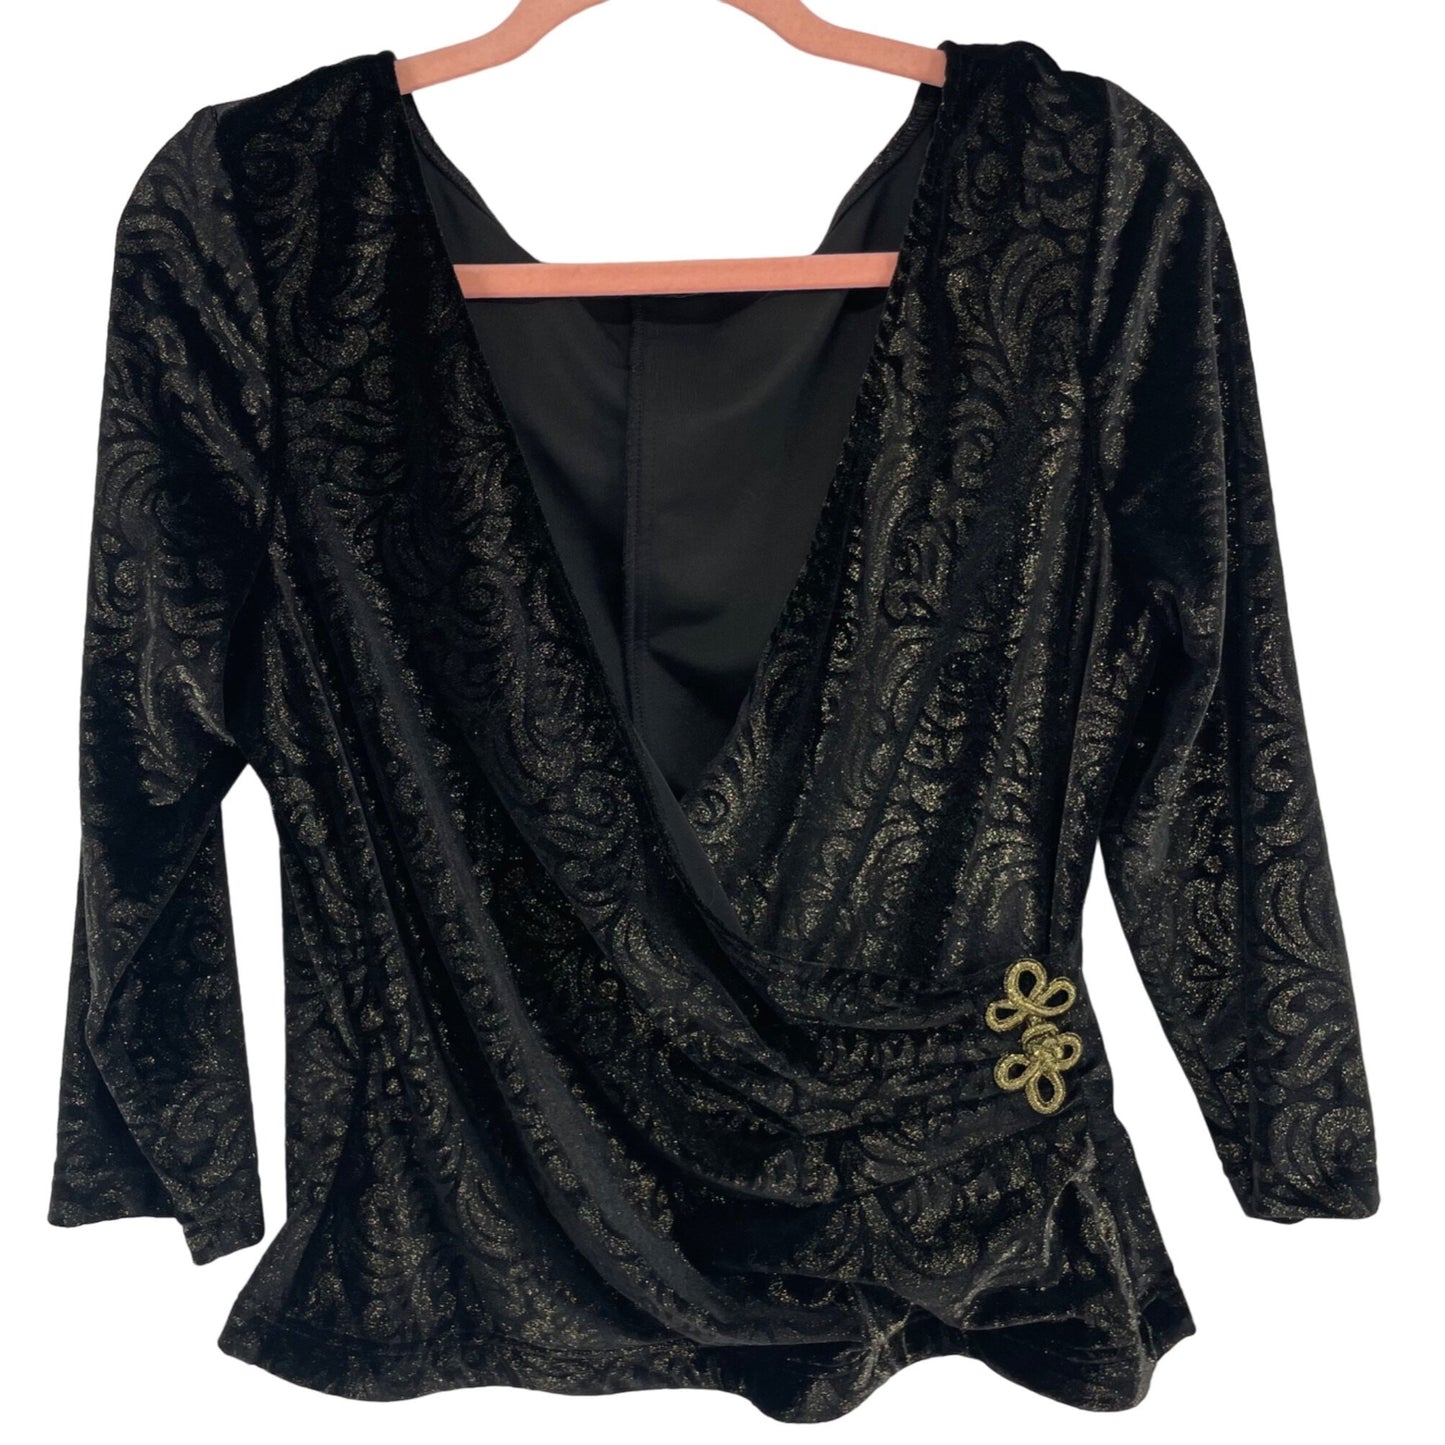 Women's Size Large Black/Gold Velvet Sparkly Plunge Line Formal Top